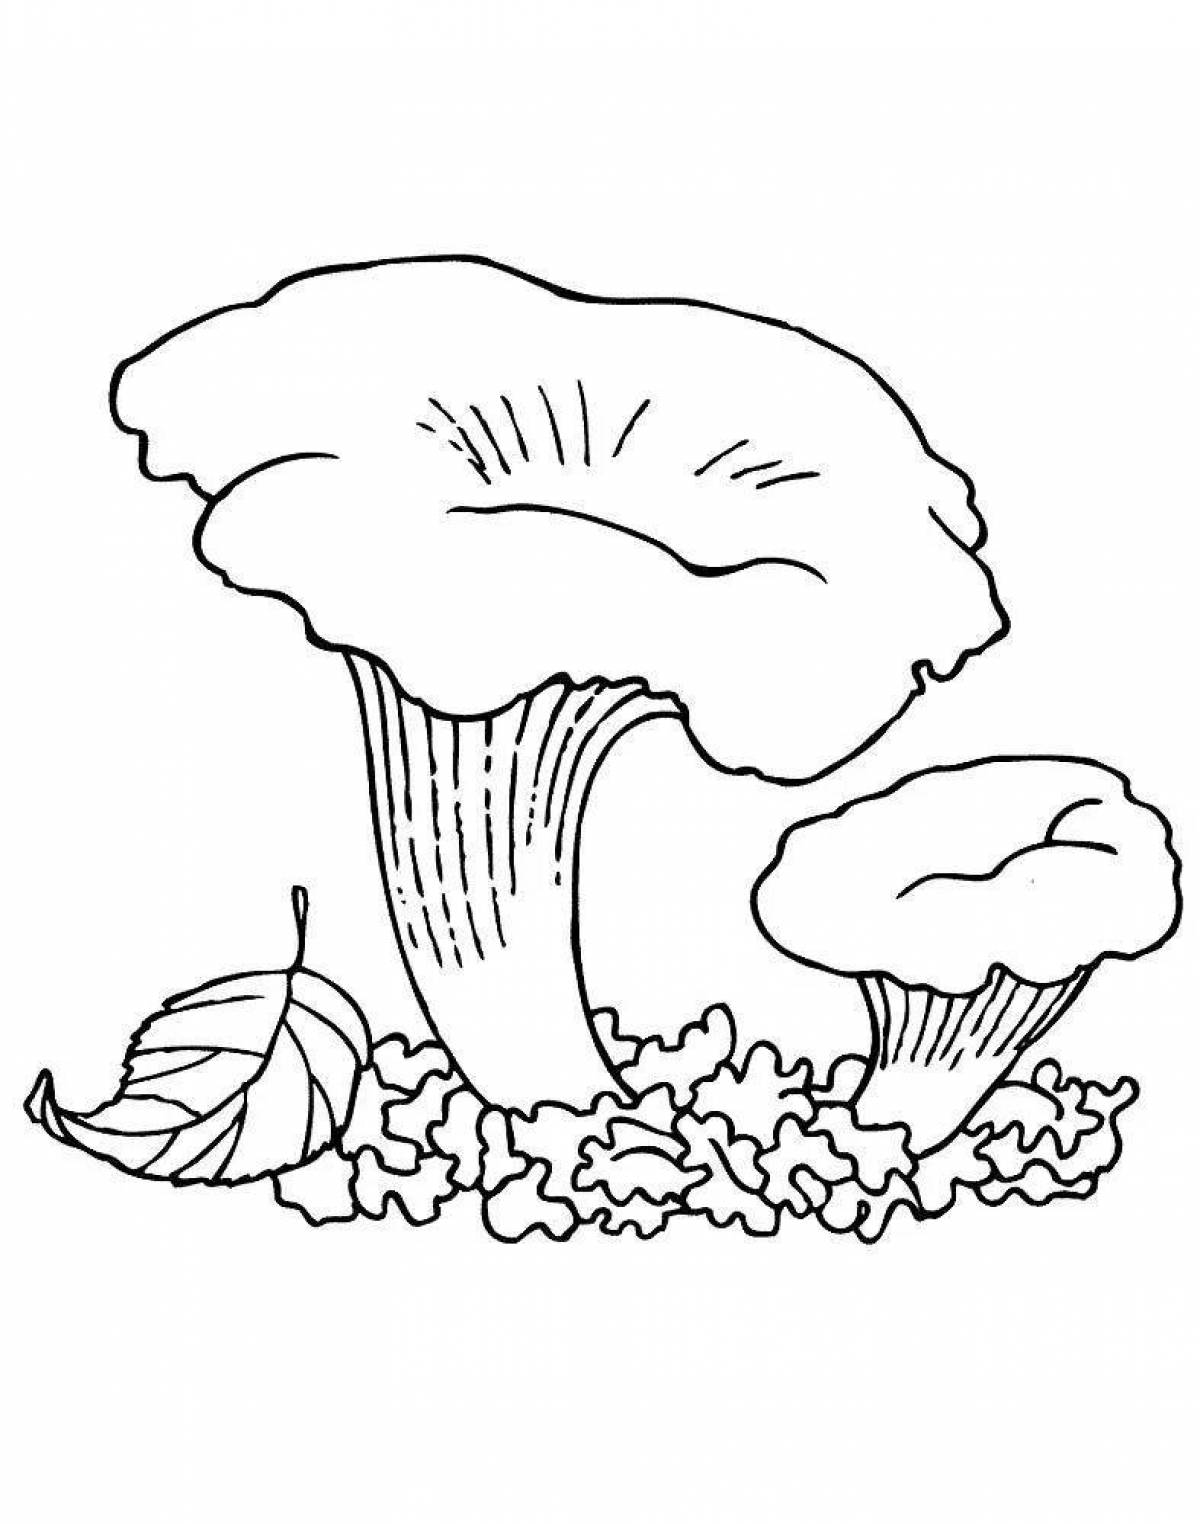 Glitter drawing of a mushroom